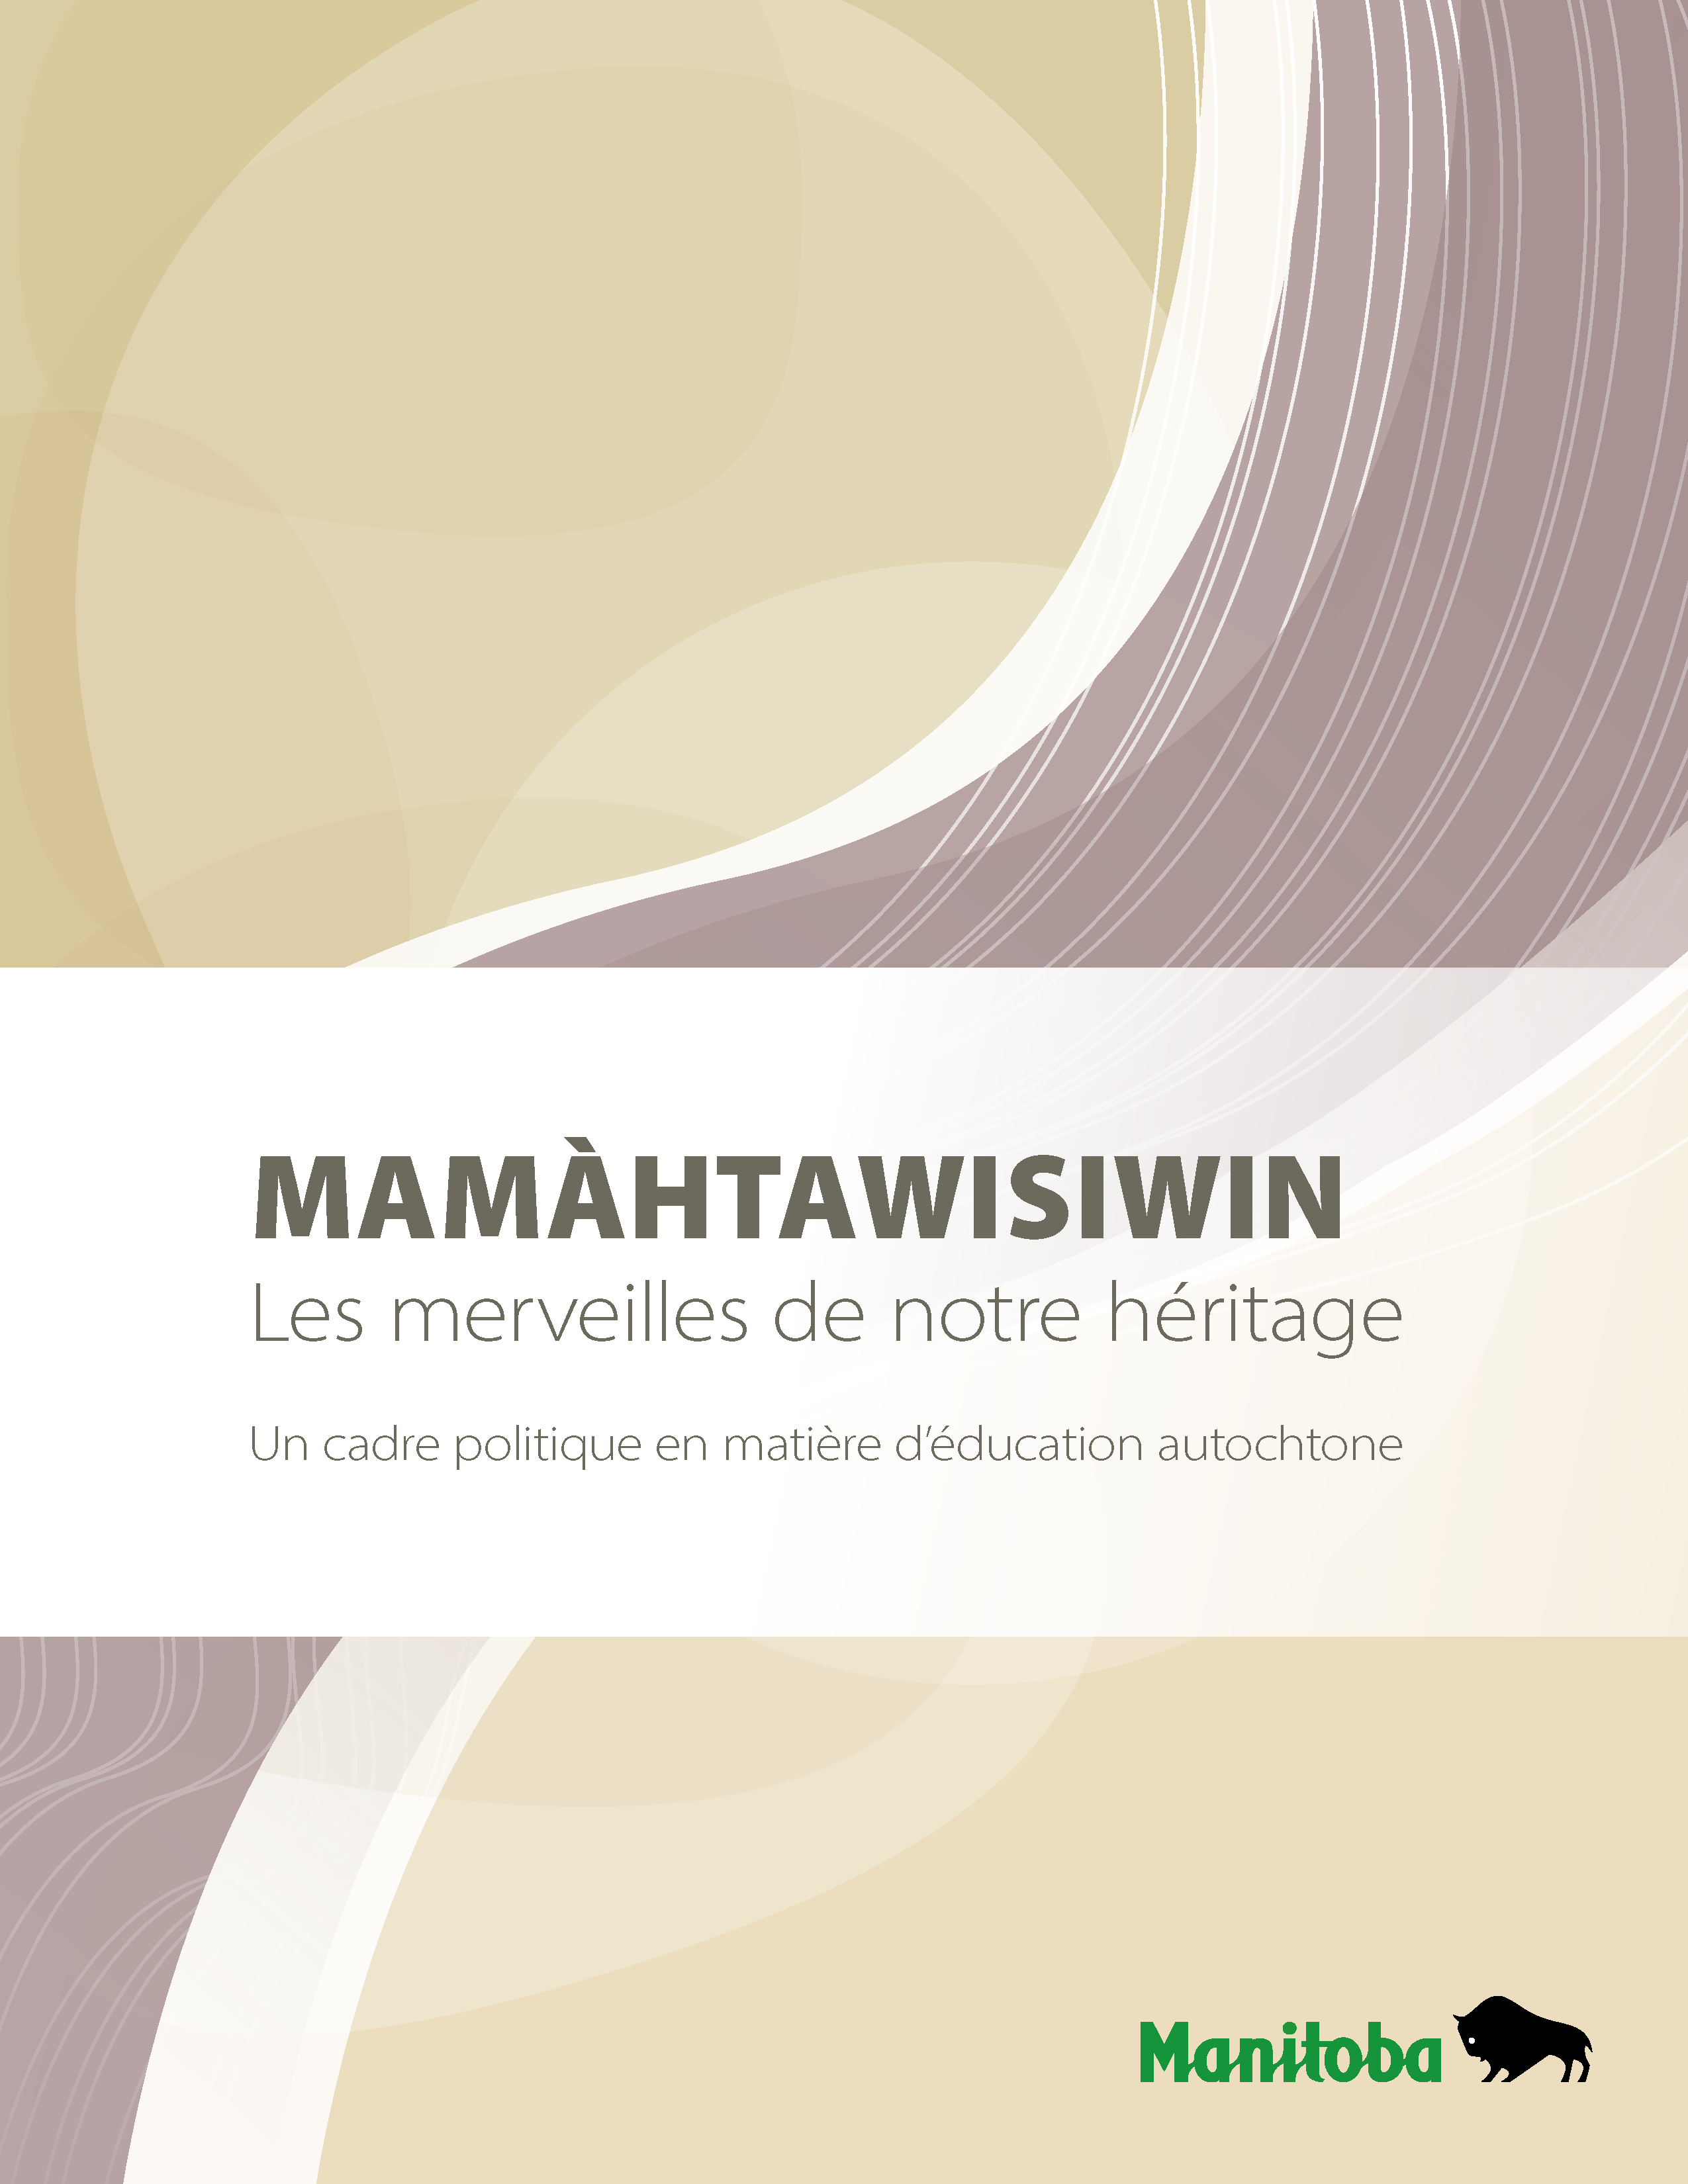 Mamhtawisiwin: Les merveilles de notre héritage